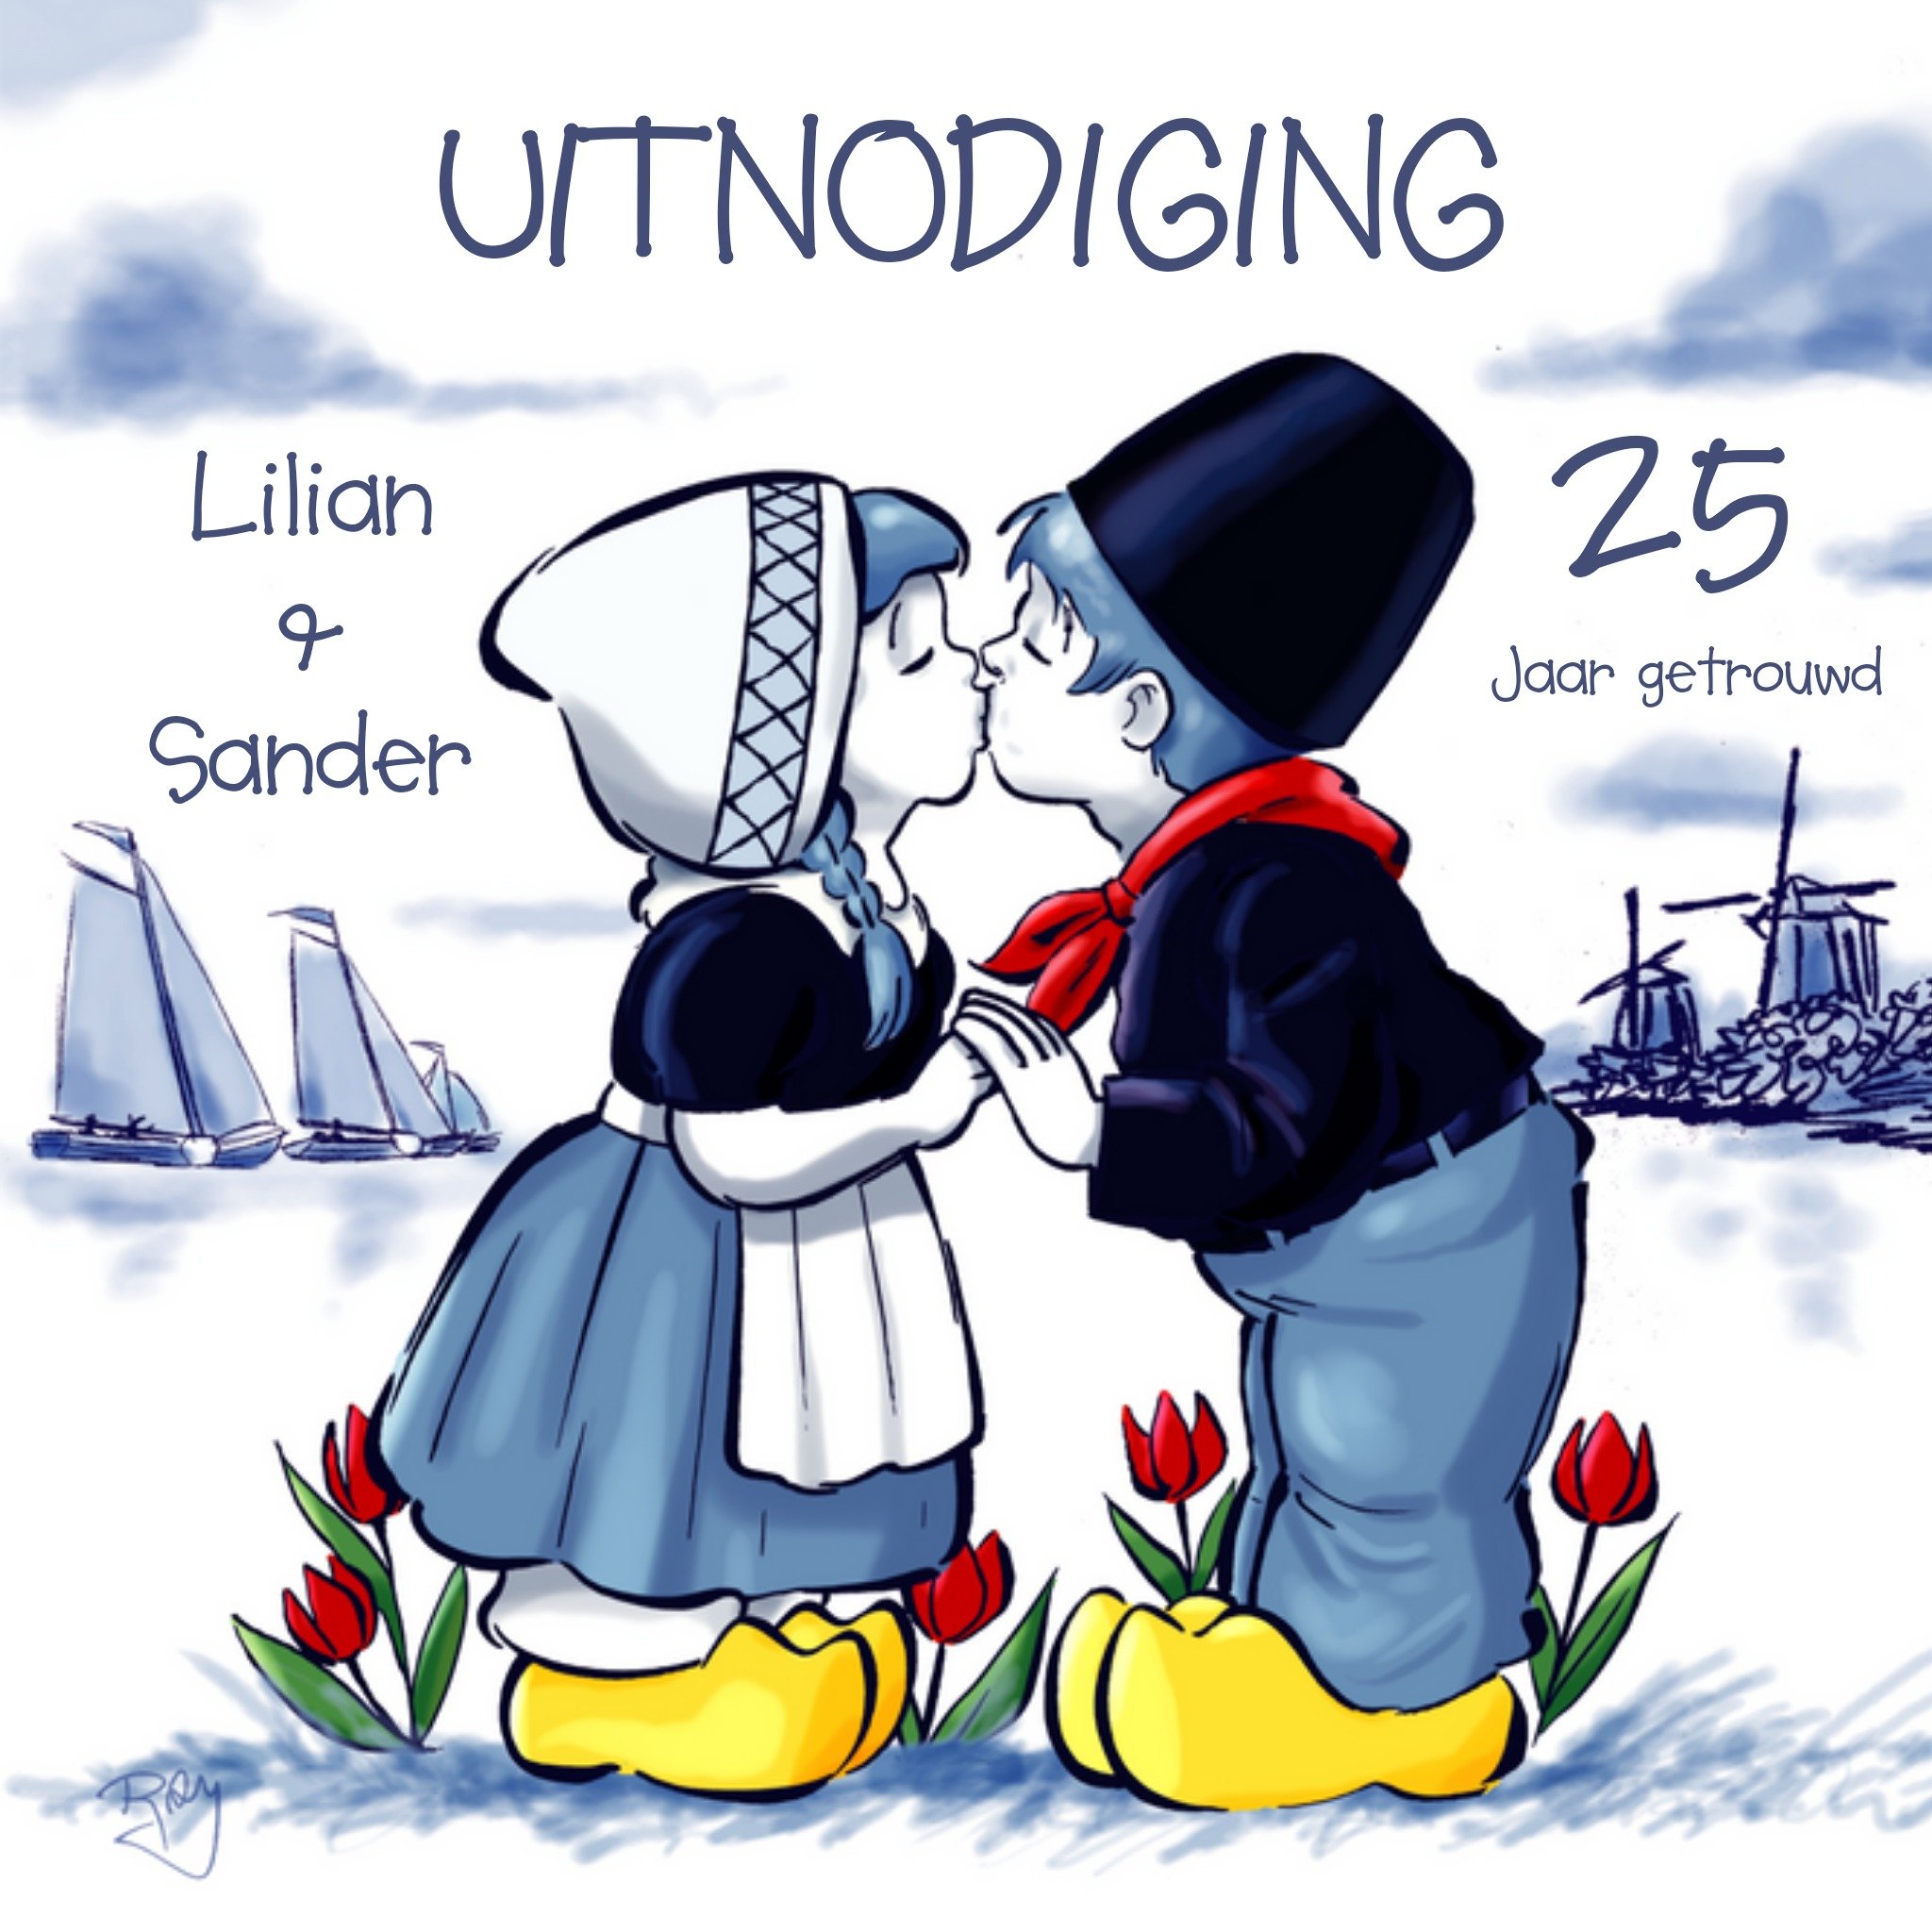 Old Dutch - Huwelijks uitnodiging - met naam 85